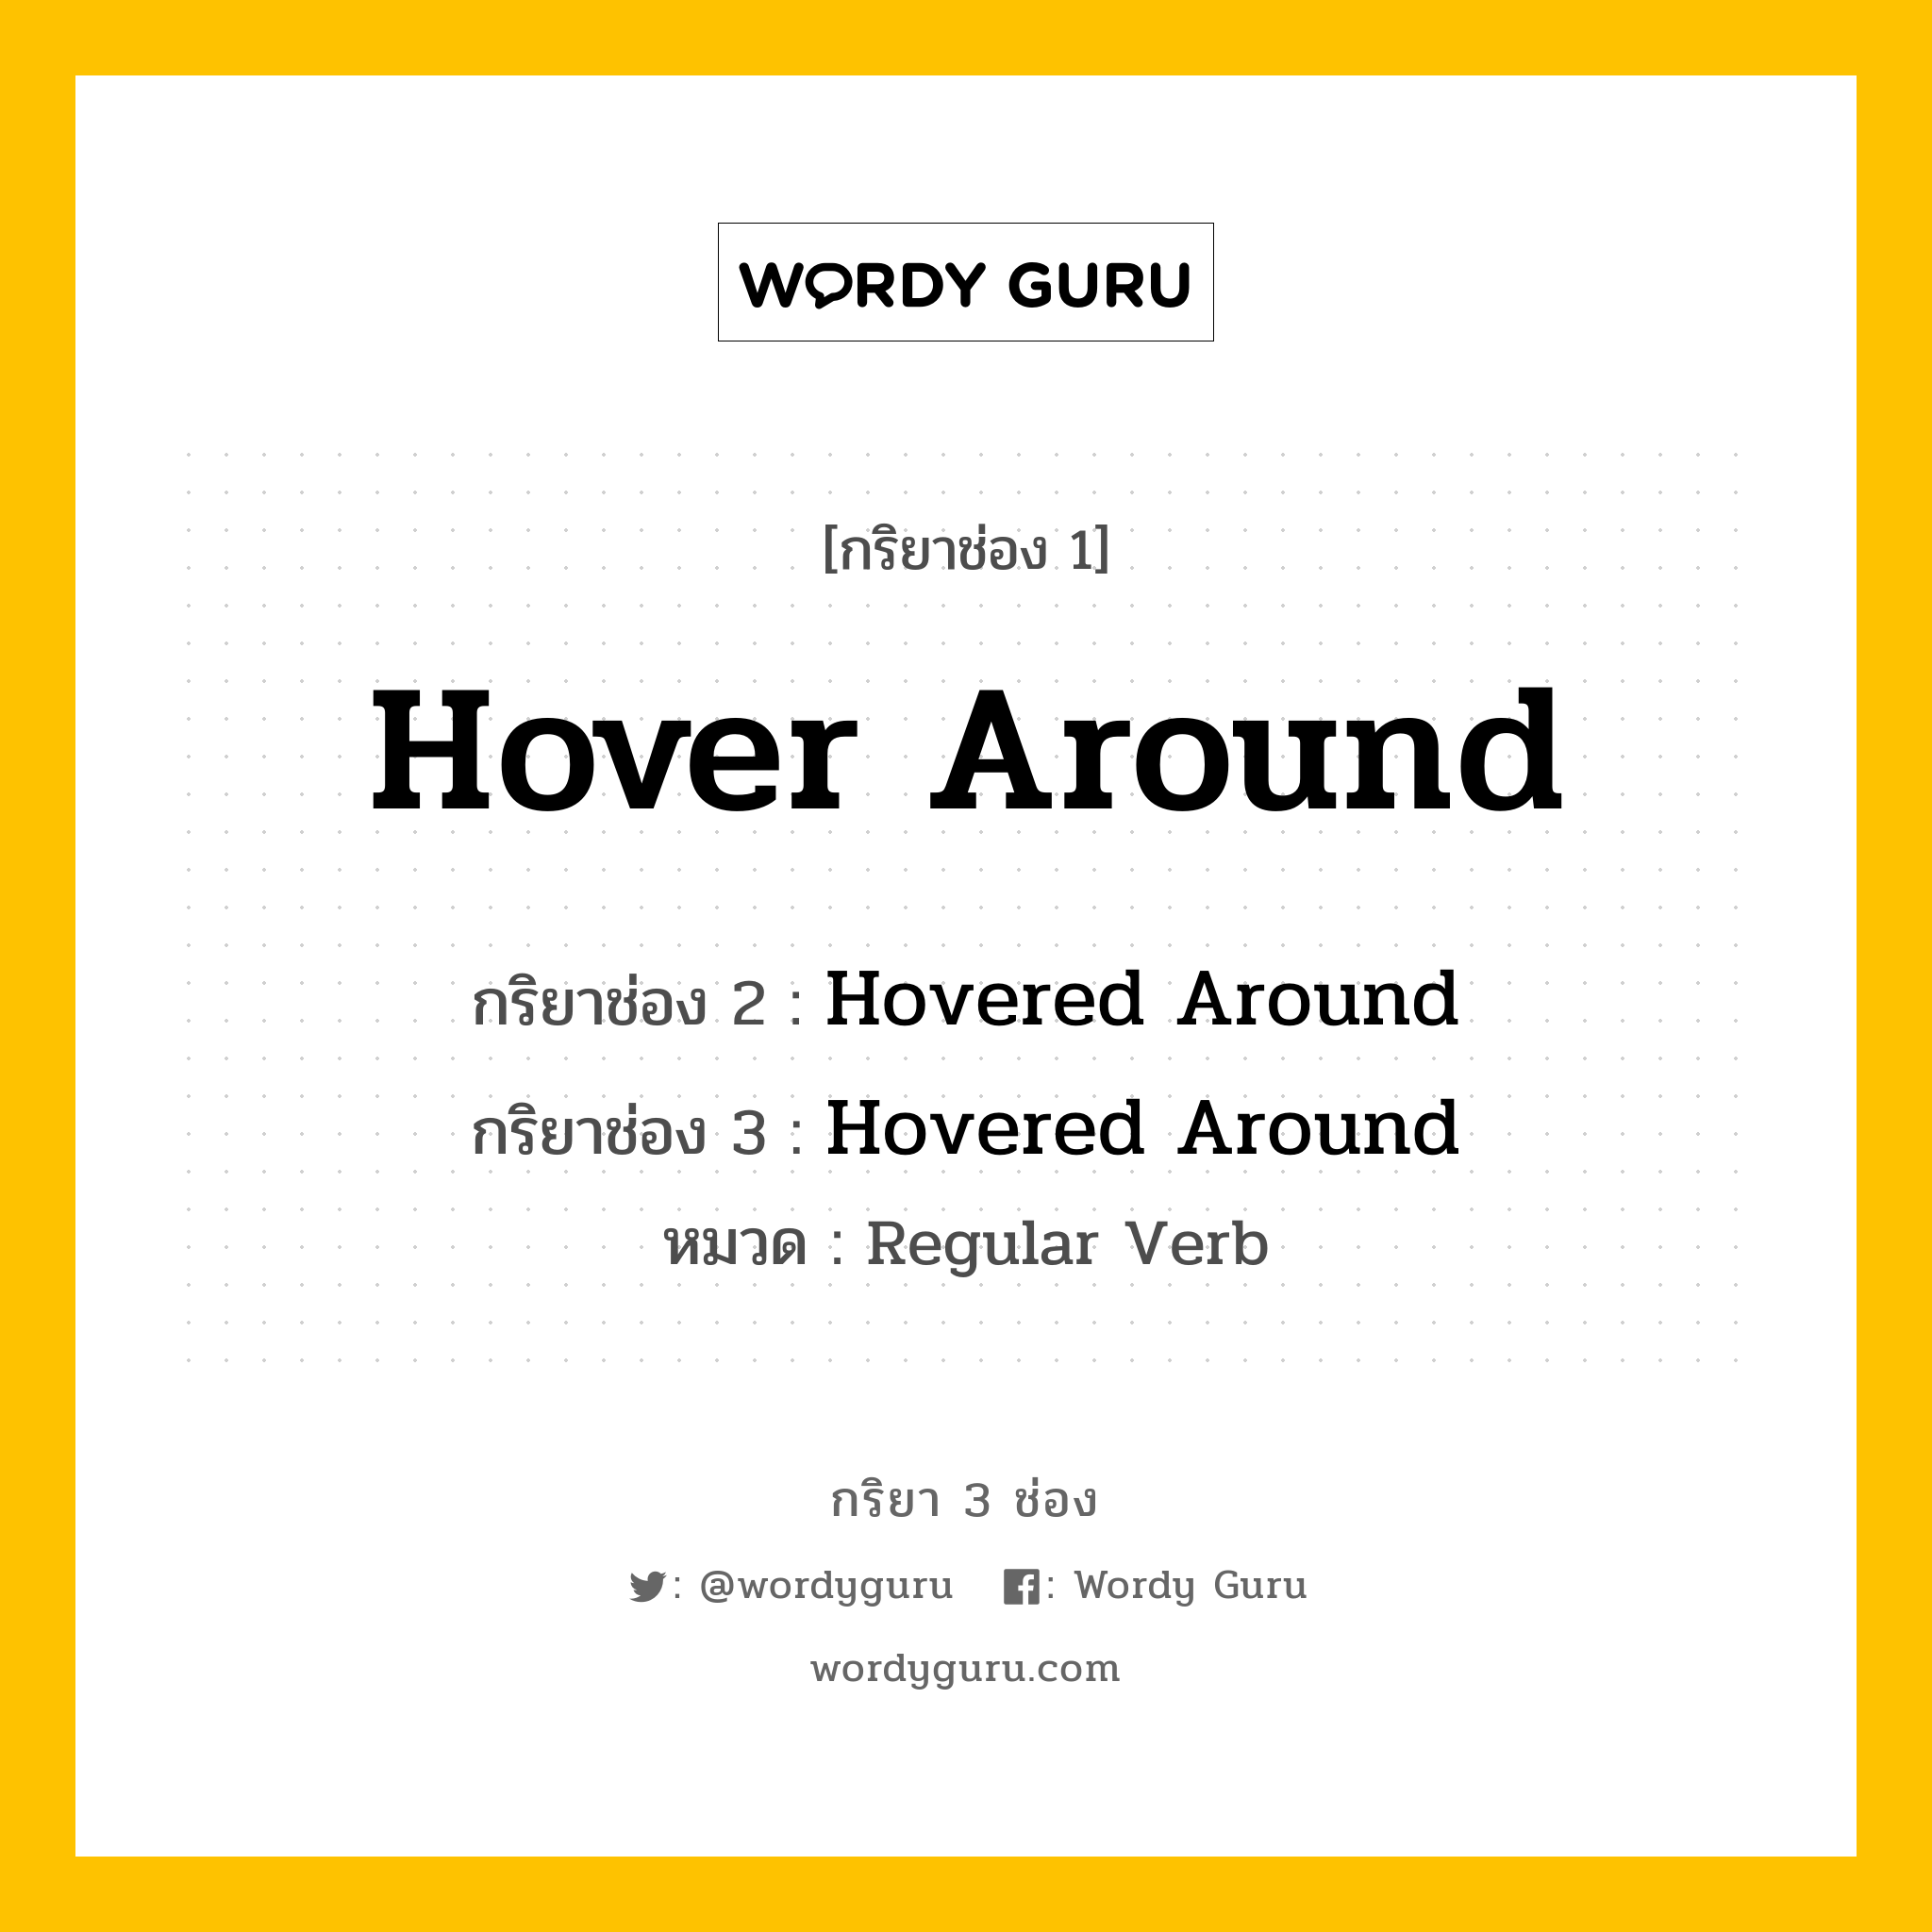 กริยา 3 ช่อง: Hover Around ช่อง 2 Hover Around ช่อง 3 คืออะไร, กริยาช่อง 1 Hover Around กริยาช่อง 2 Hovered Around กริยาช่อง 3 Hovered Around หมวด Regular Verb หมวด Regular Verb